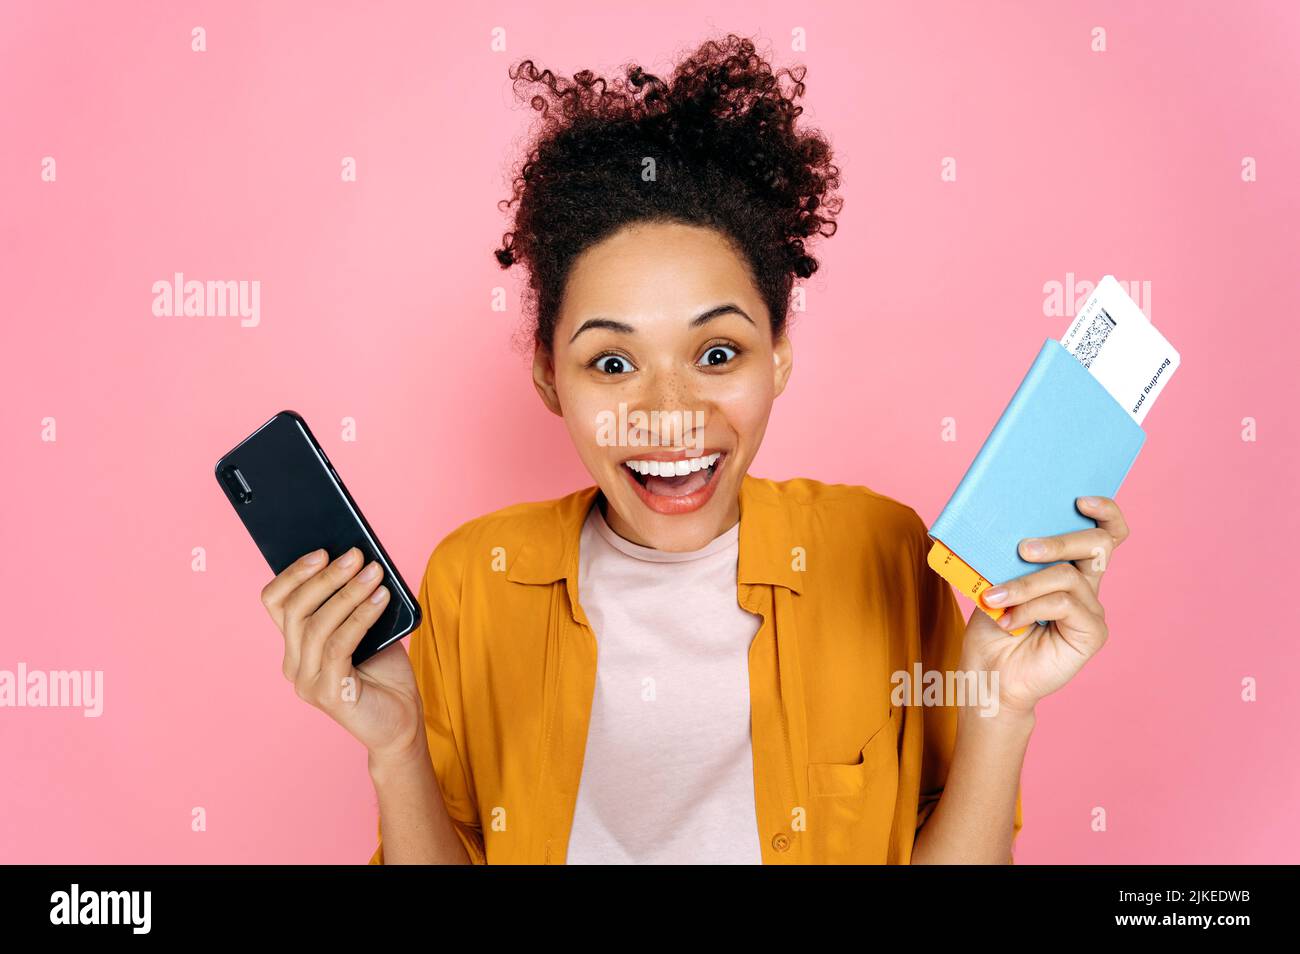 Erstaunt aufgeregt afroamerikanische junge Frau, weibliche Reisende Tourist, in Freizeitkleidung, hält Smartphone und Pass mit Tickets, stehen auf isolierten rosa Hintergrund, schockiert Blicke auf die Kamera, lächelnd Stockfoto